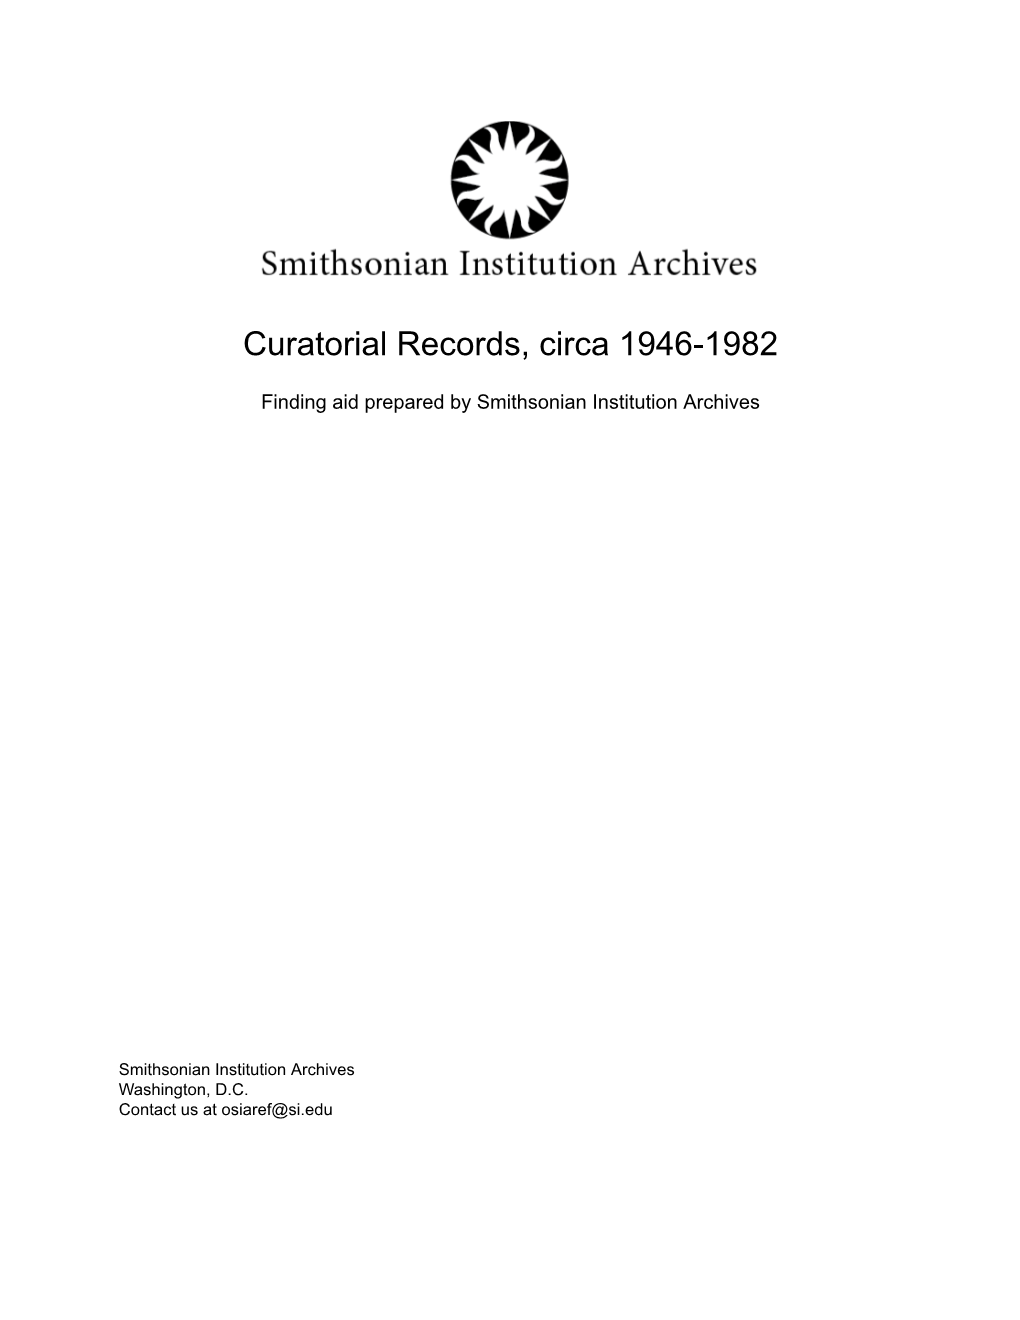 Curatorial Records, Circa 1946-1982